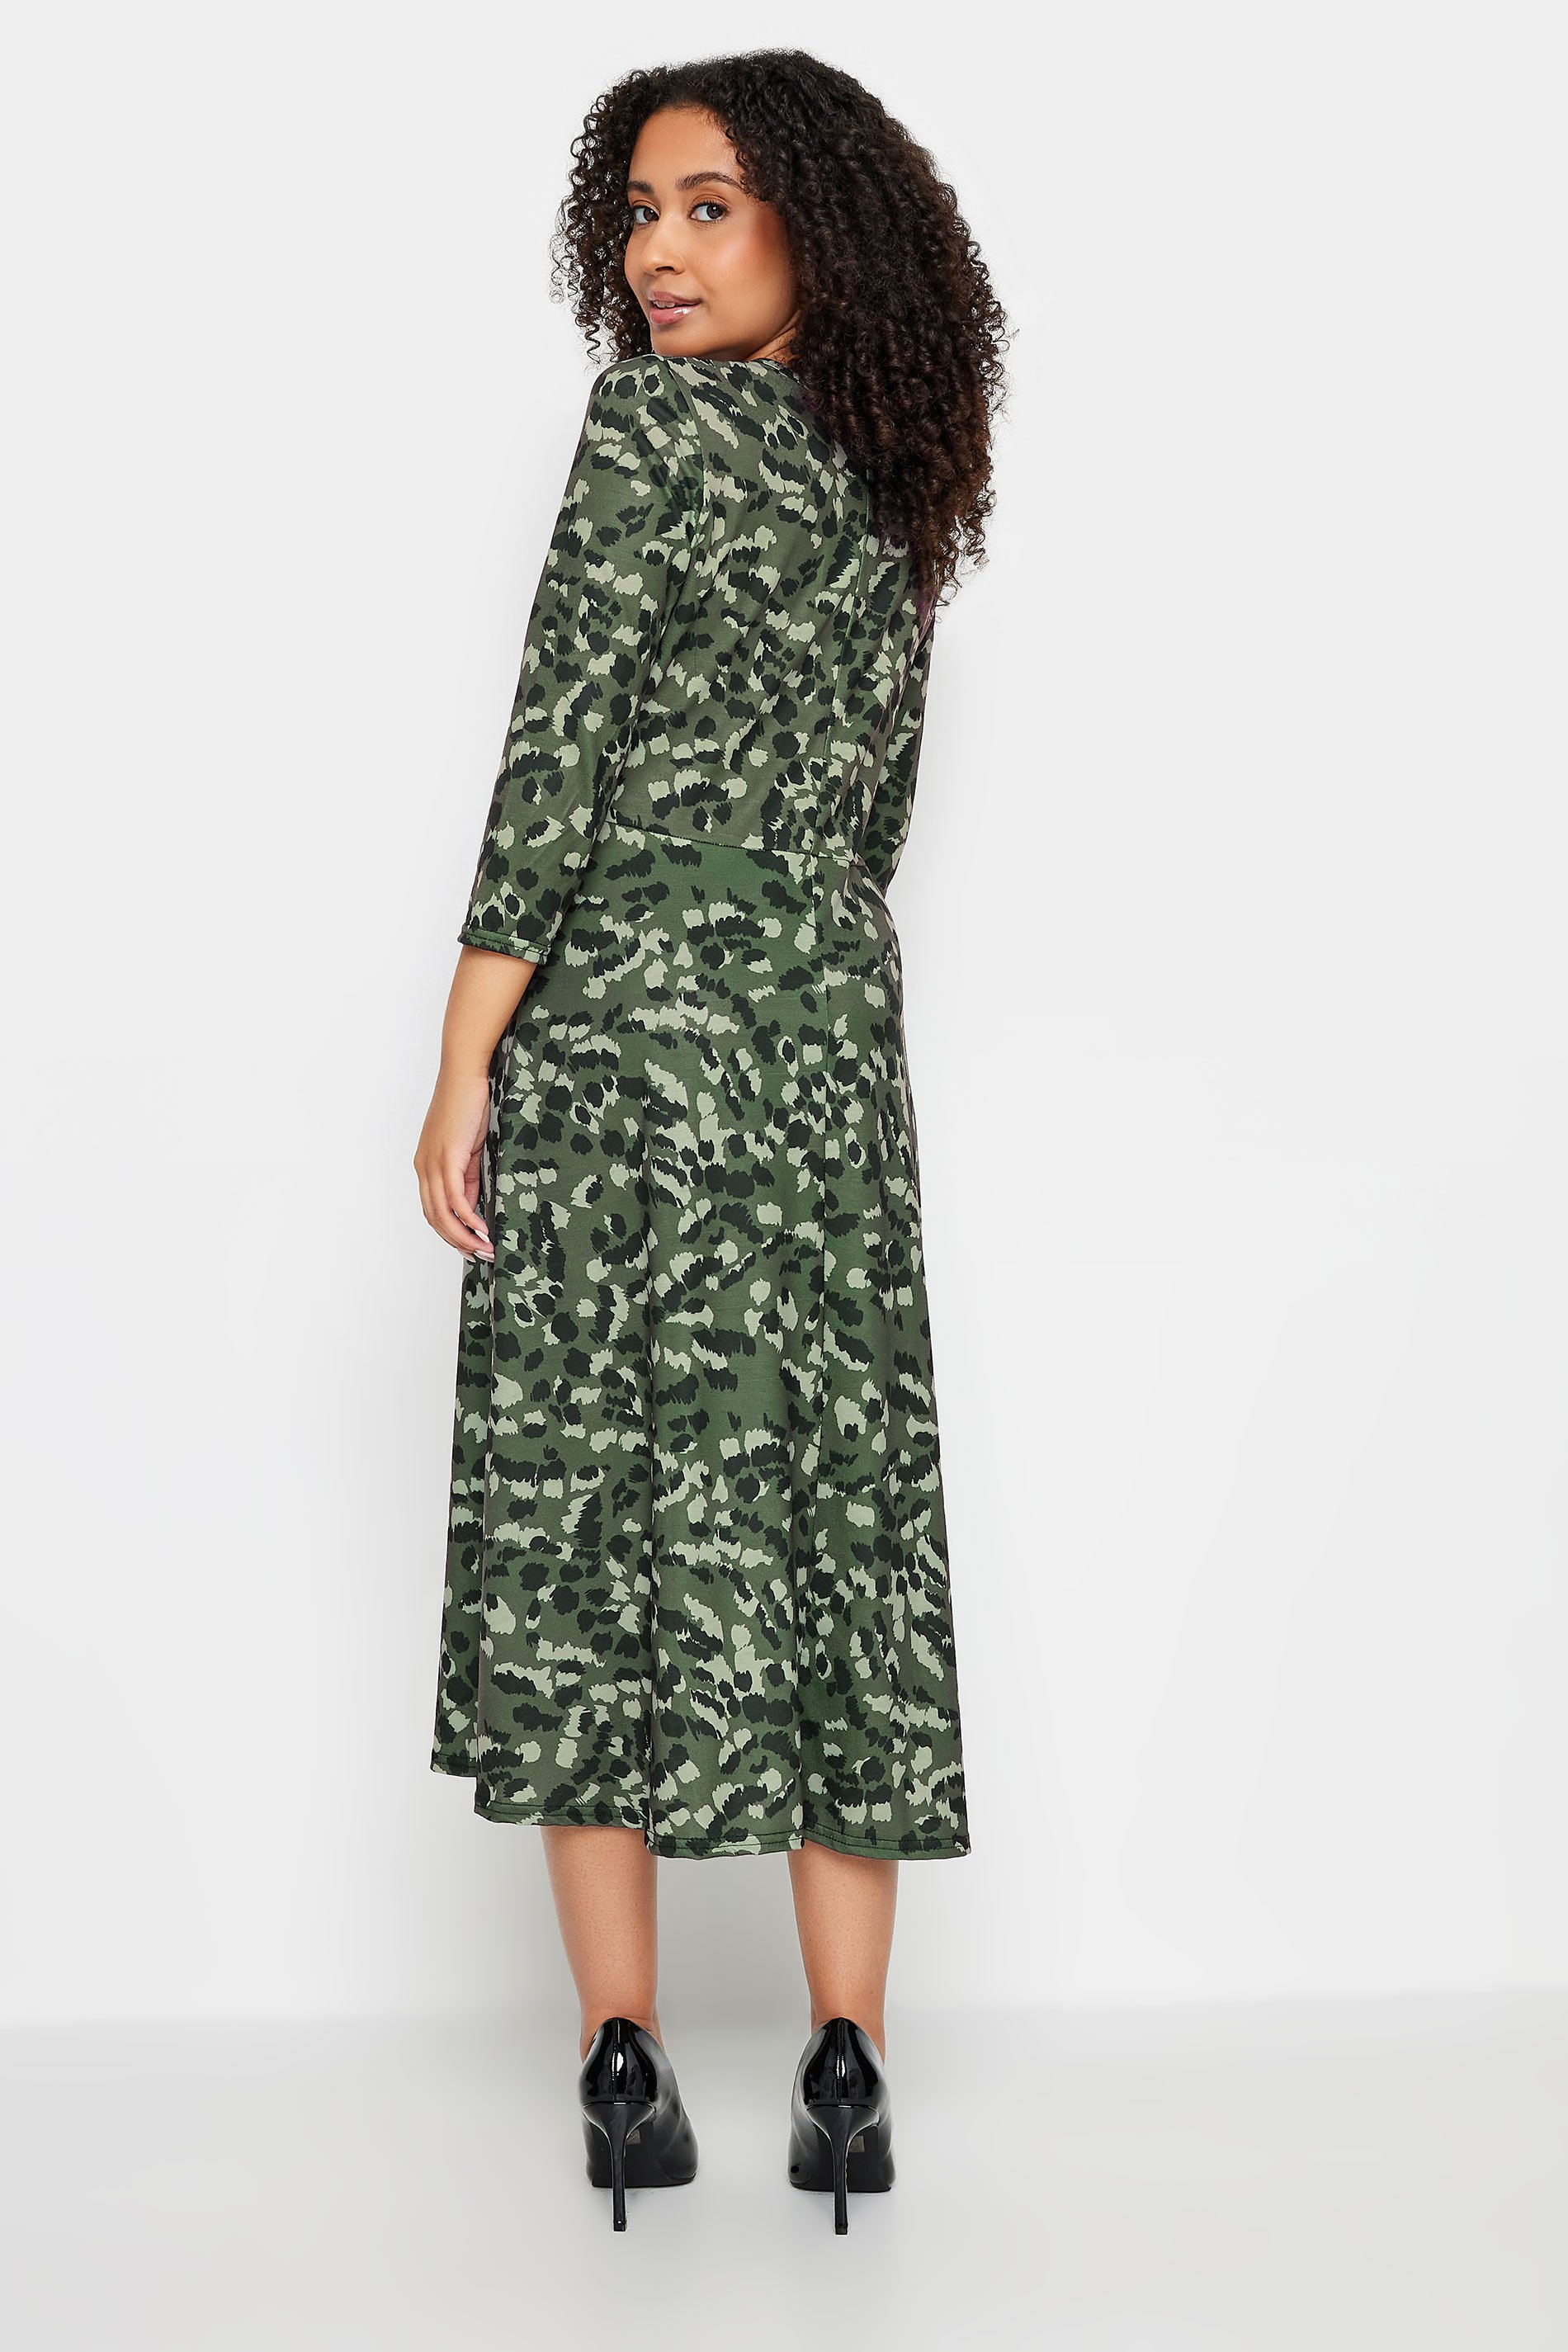 M&Co Petite Green Animal Print Wrap Dress | M&Co  3